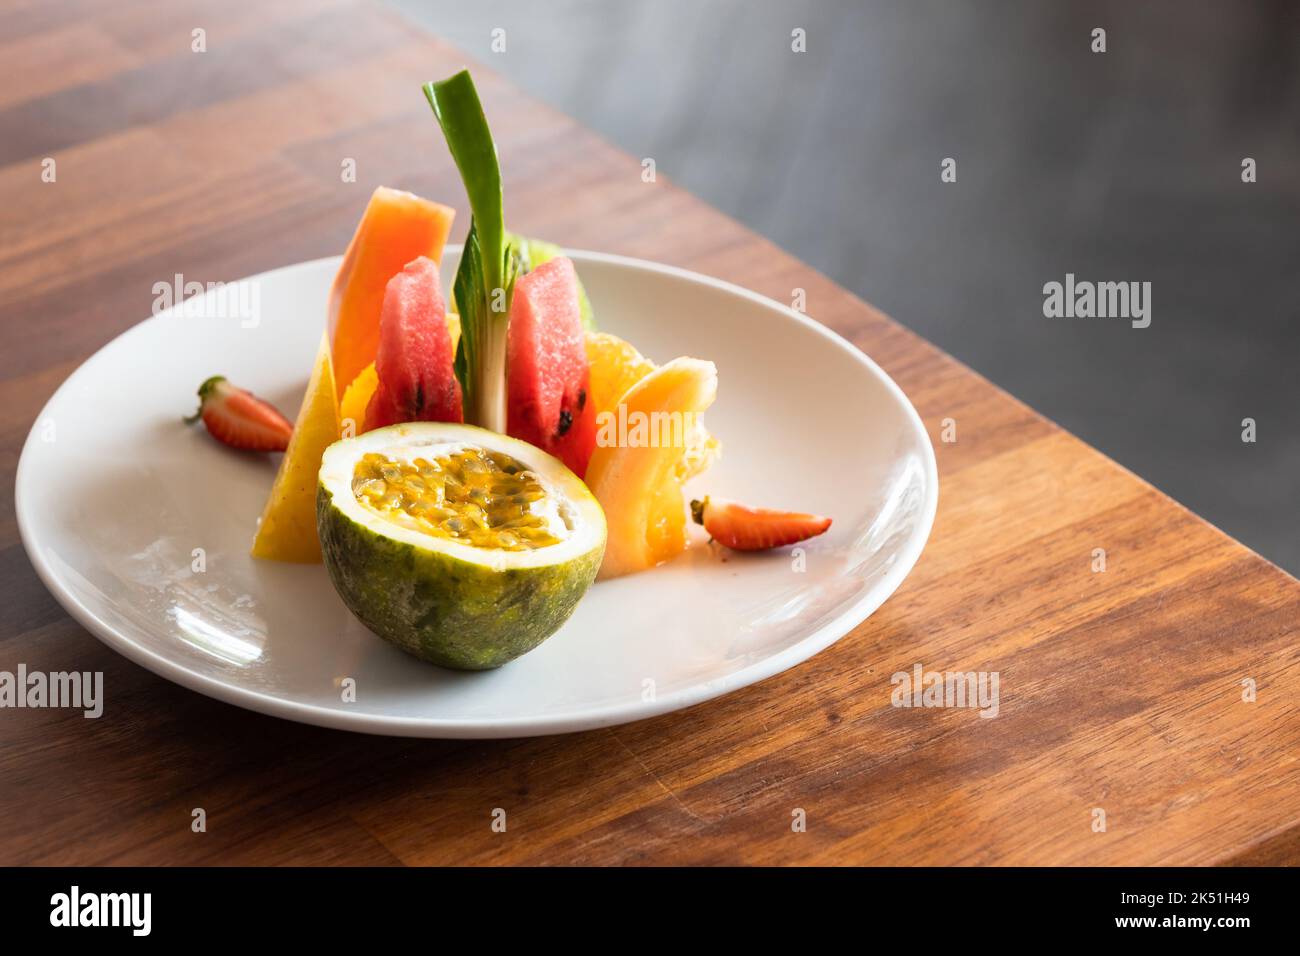 Assiette de fruits sur une table en bois, gros plan studio photo Banque D'Images